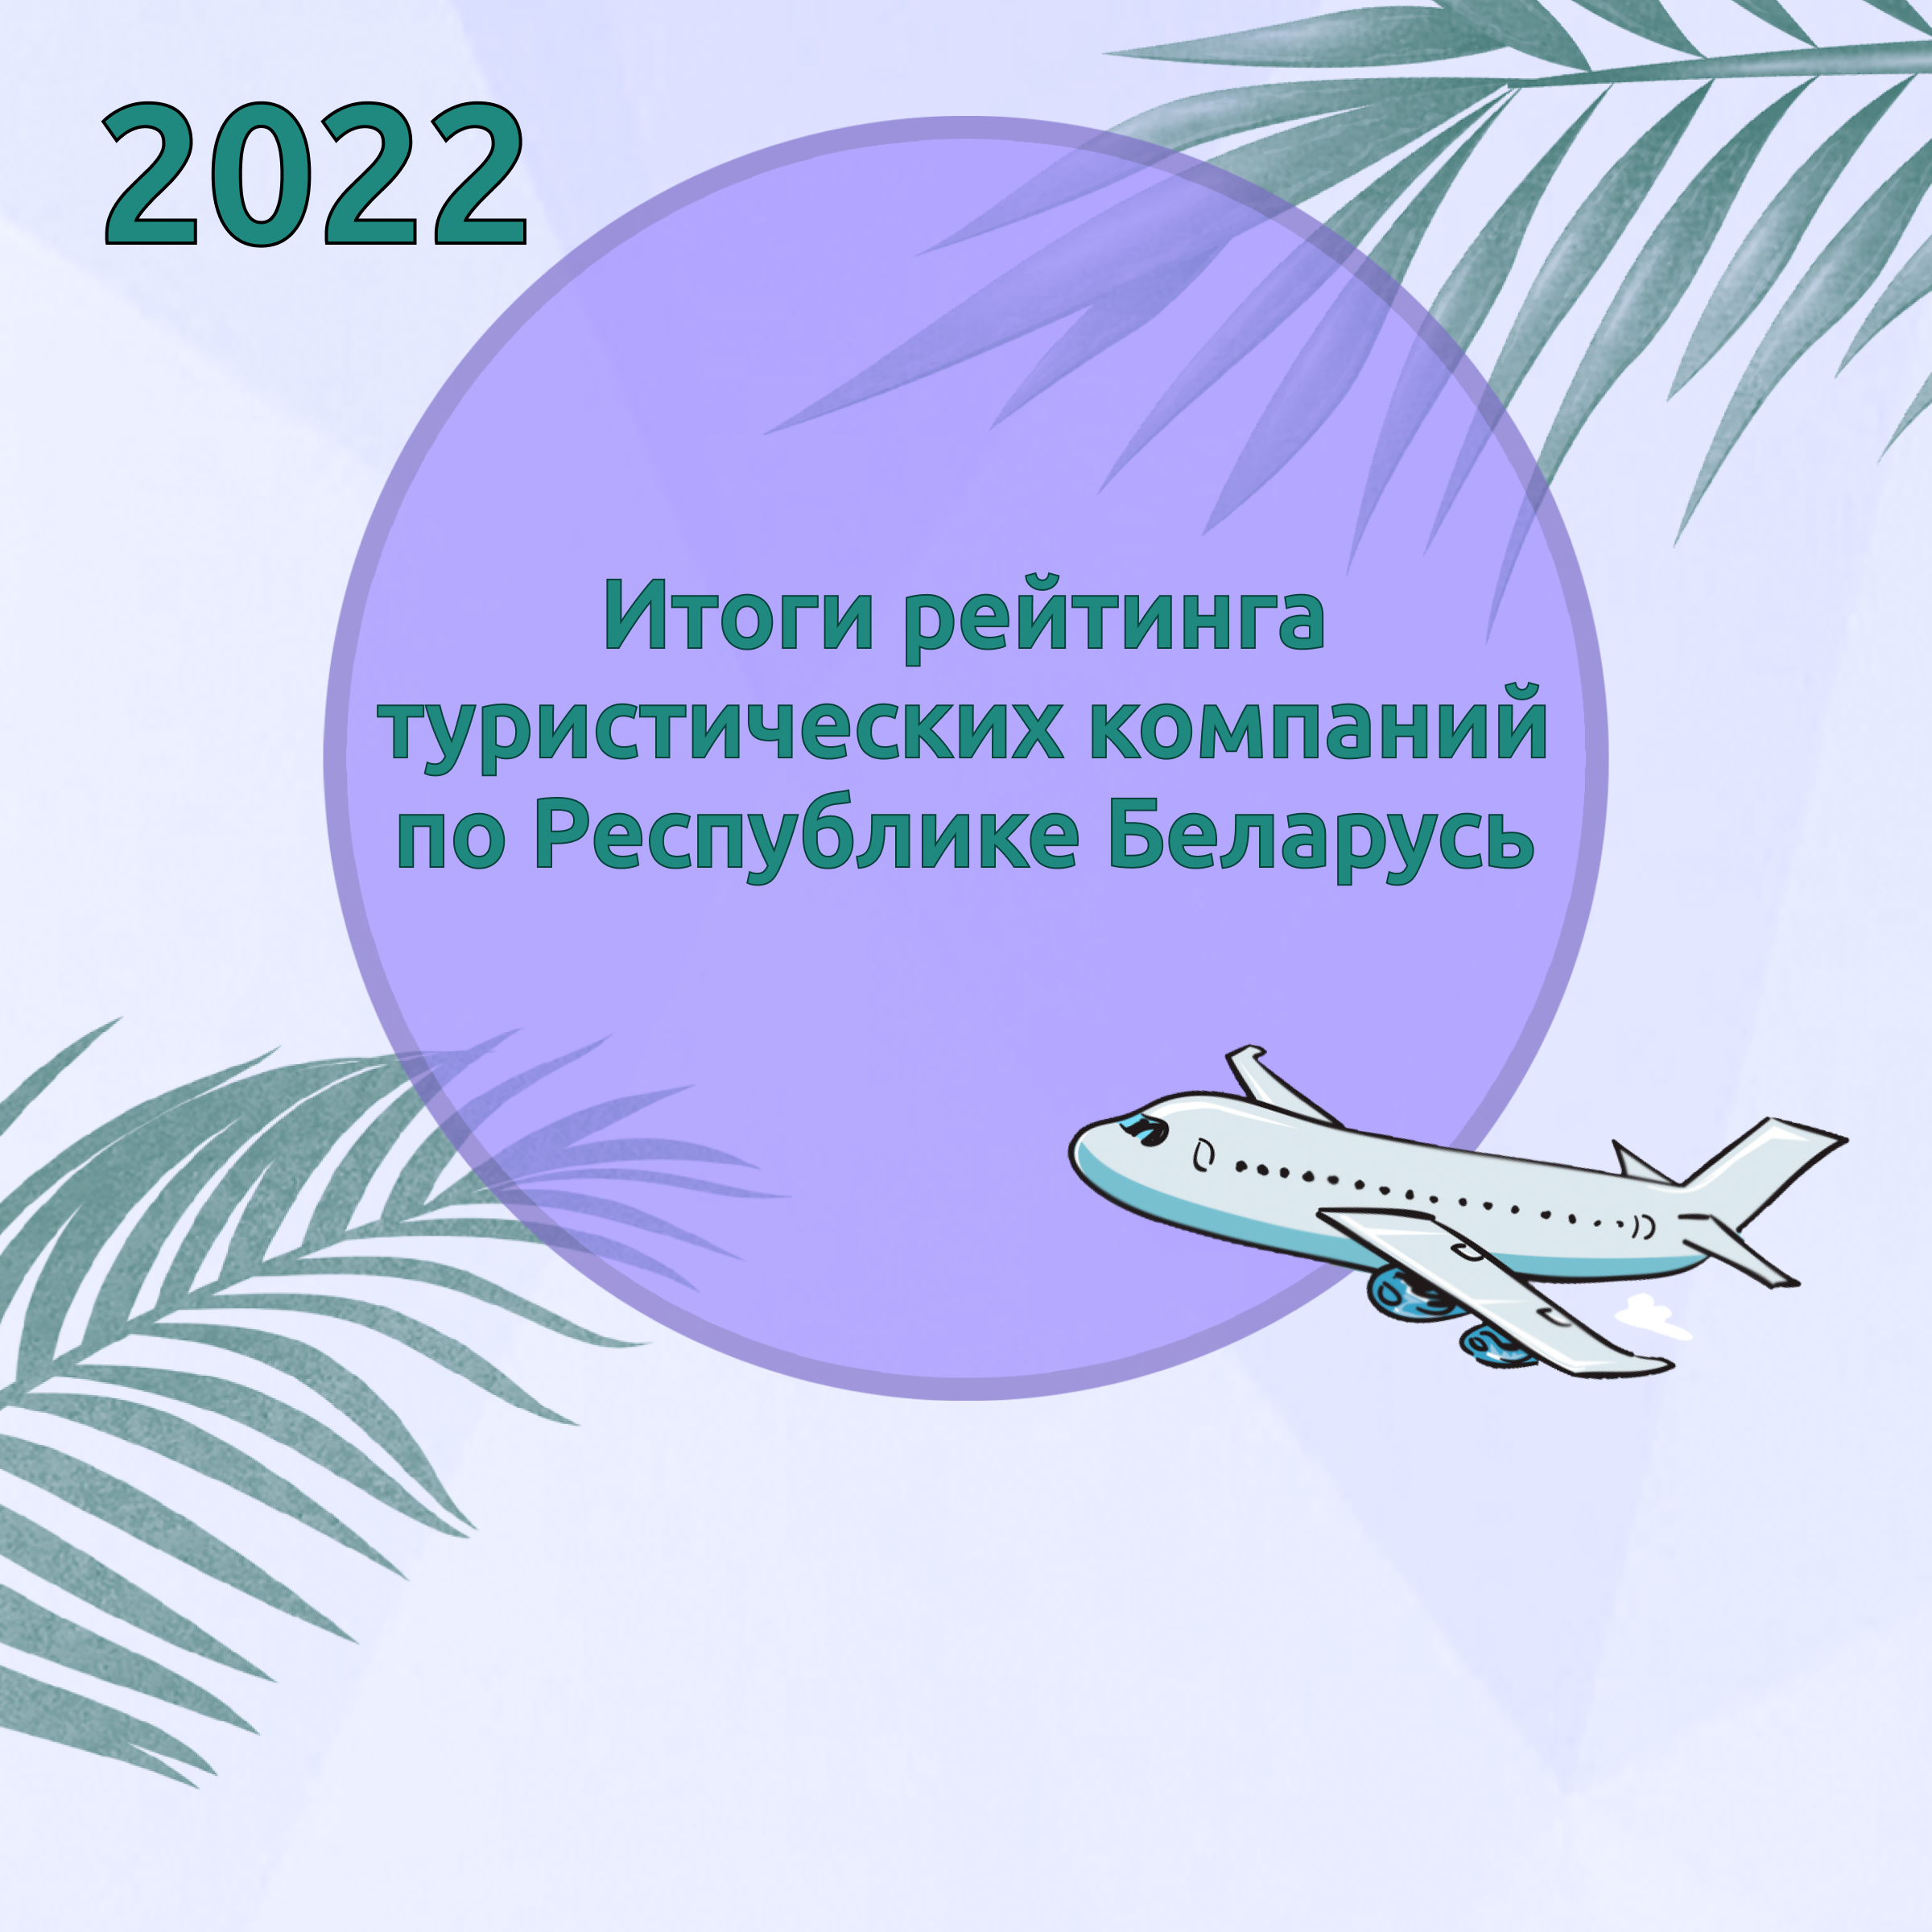 Итоги рейтинга туристических компаний по Республике Беларусь за 2022 год